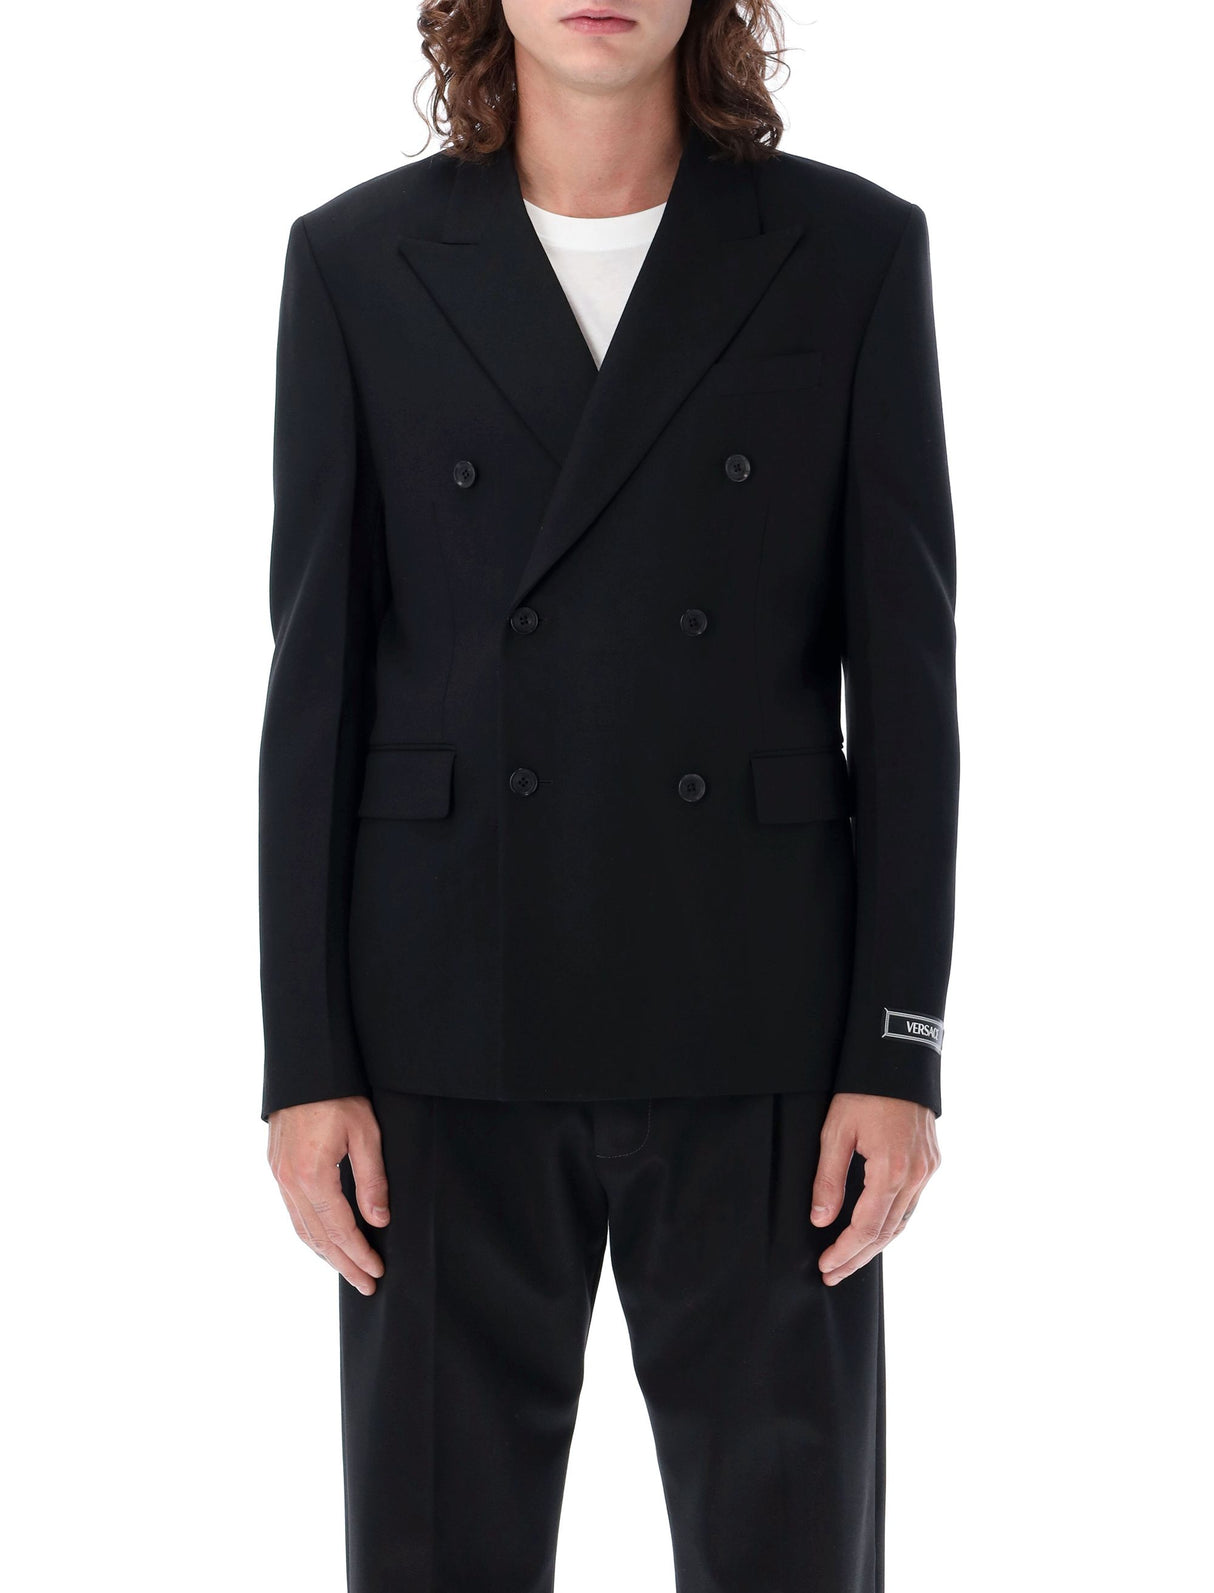 男士双排扣黑色西装外套 - FW23系列